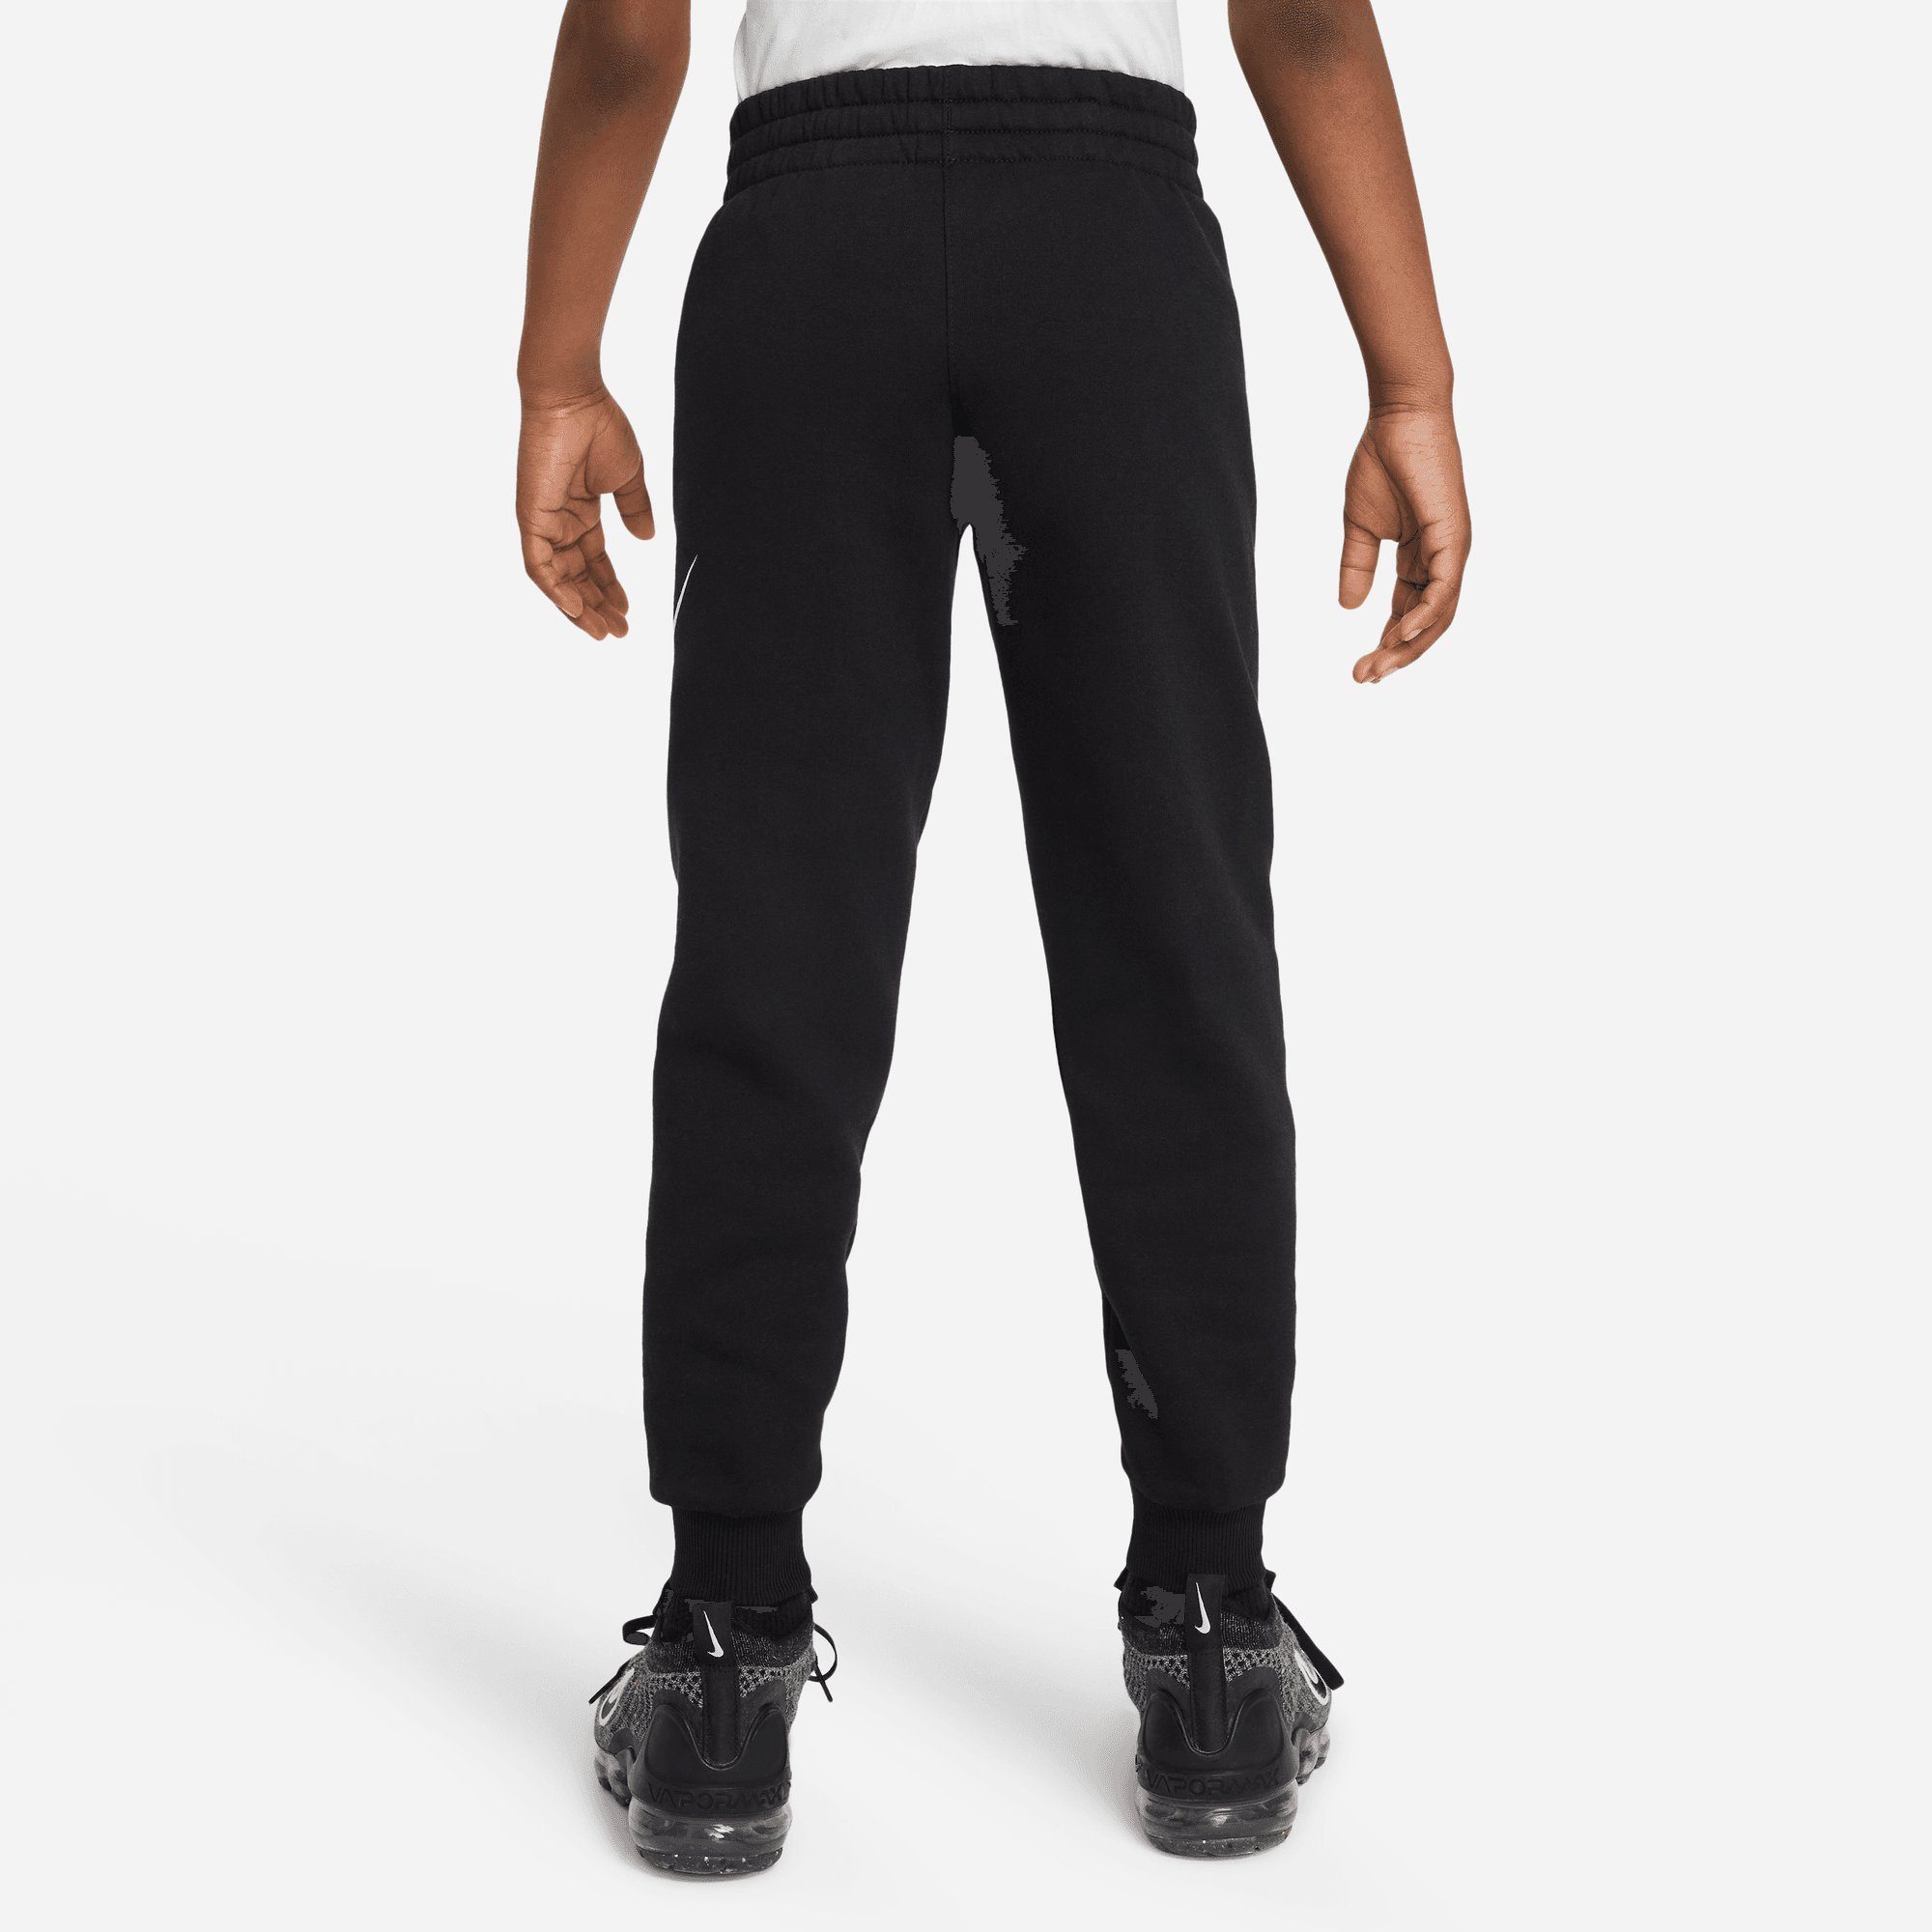 PANTS KIDS' Nike Jogginghose JOGGER CLUB FLEECE BLACK/WHITE BIG Sportswear